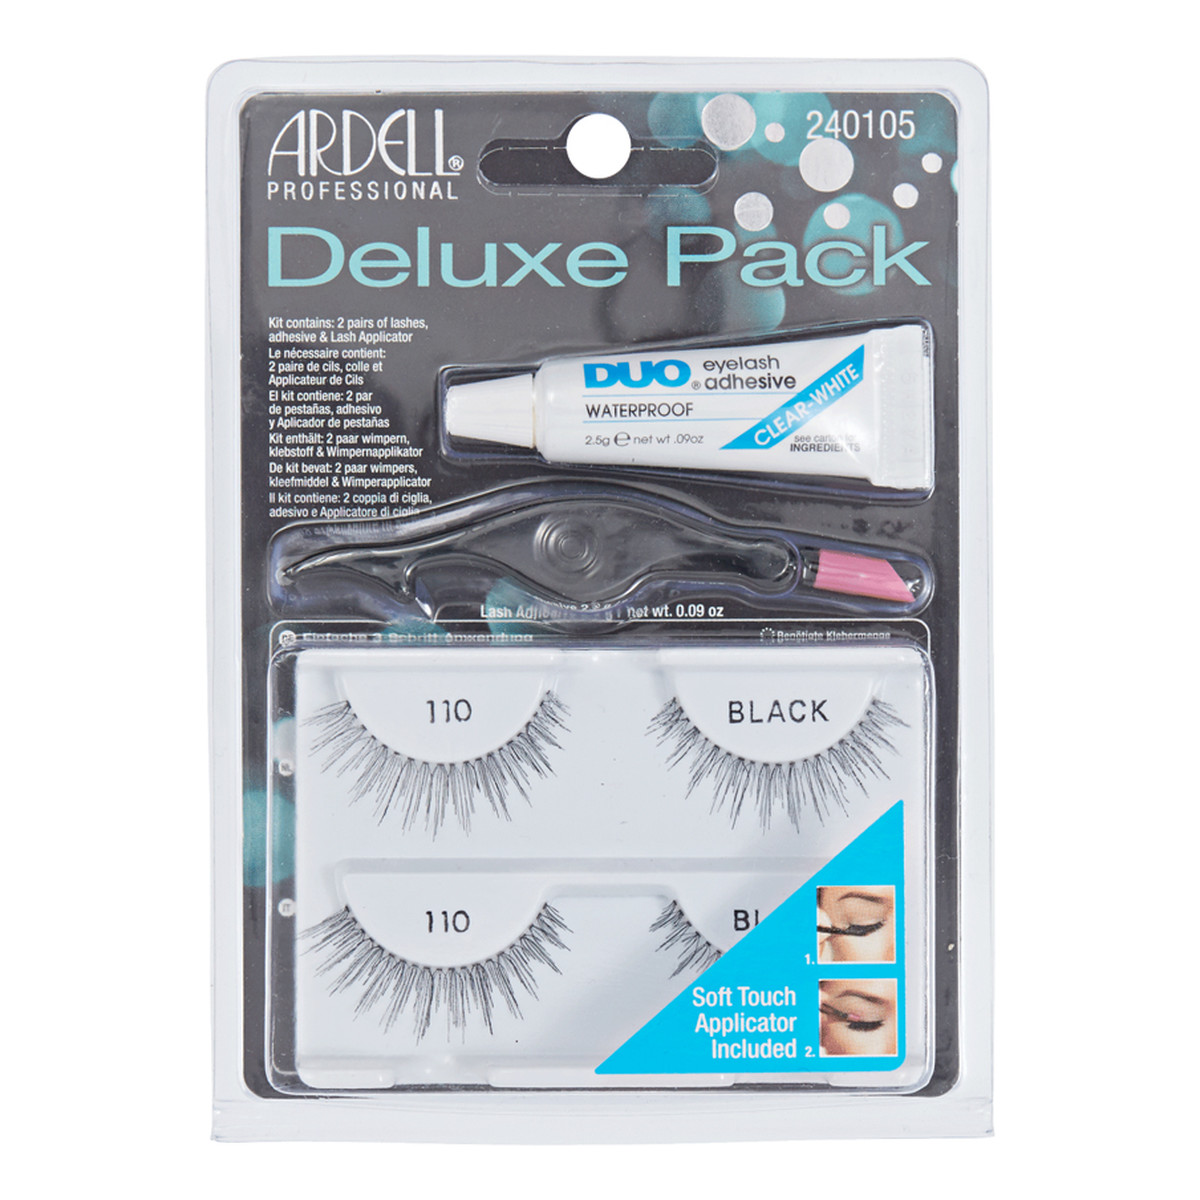 Ardell Deluxe Pack 110 2 pary sztucznych rzęs Black + Lash Adhesive klej do rzęs 2,5g + Lash Applicator aplikator do rzęs